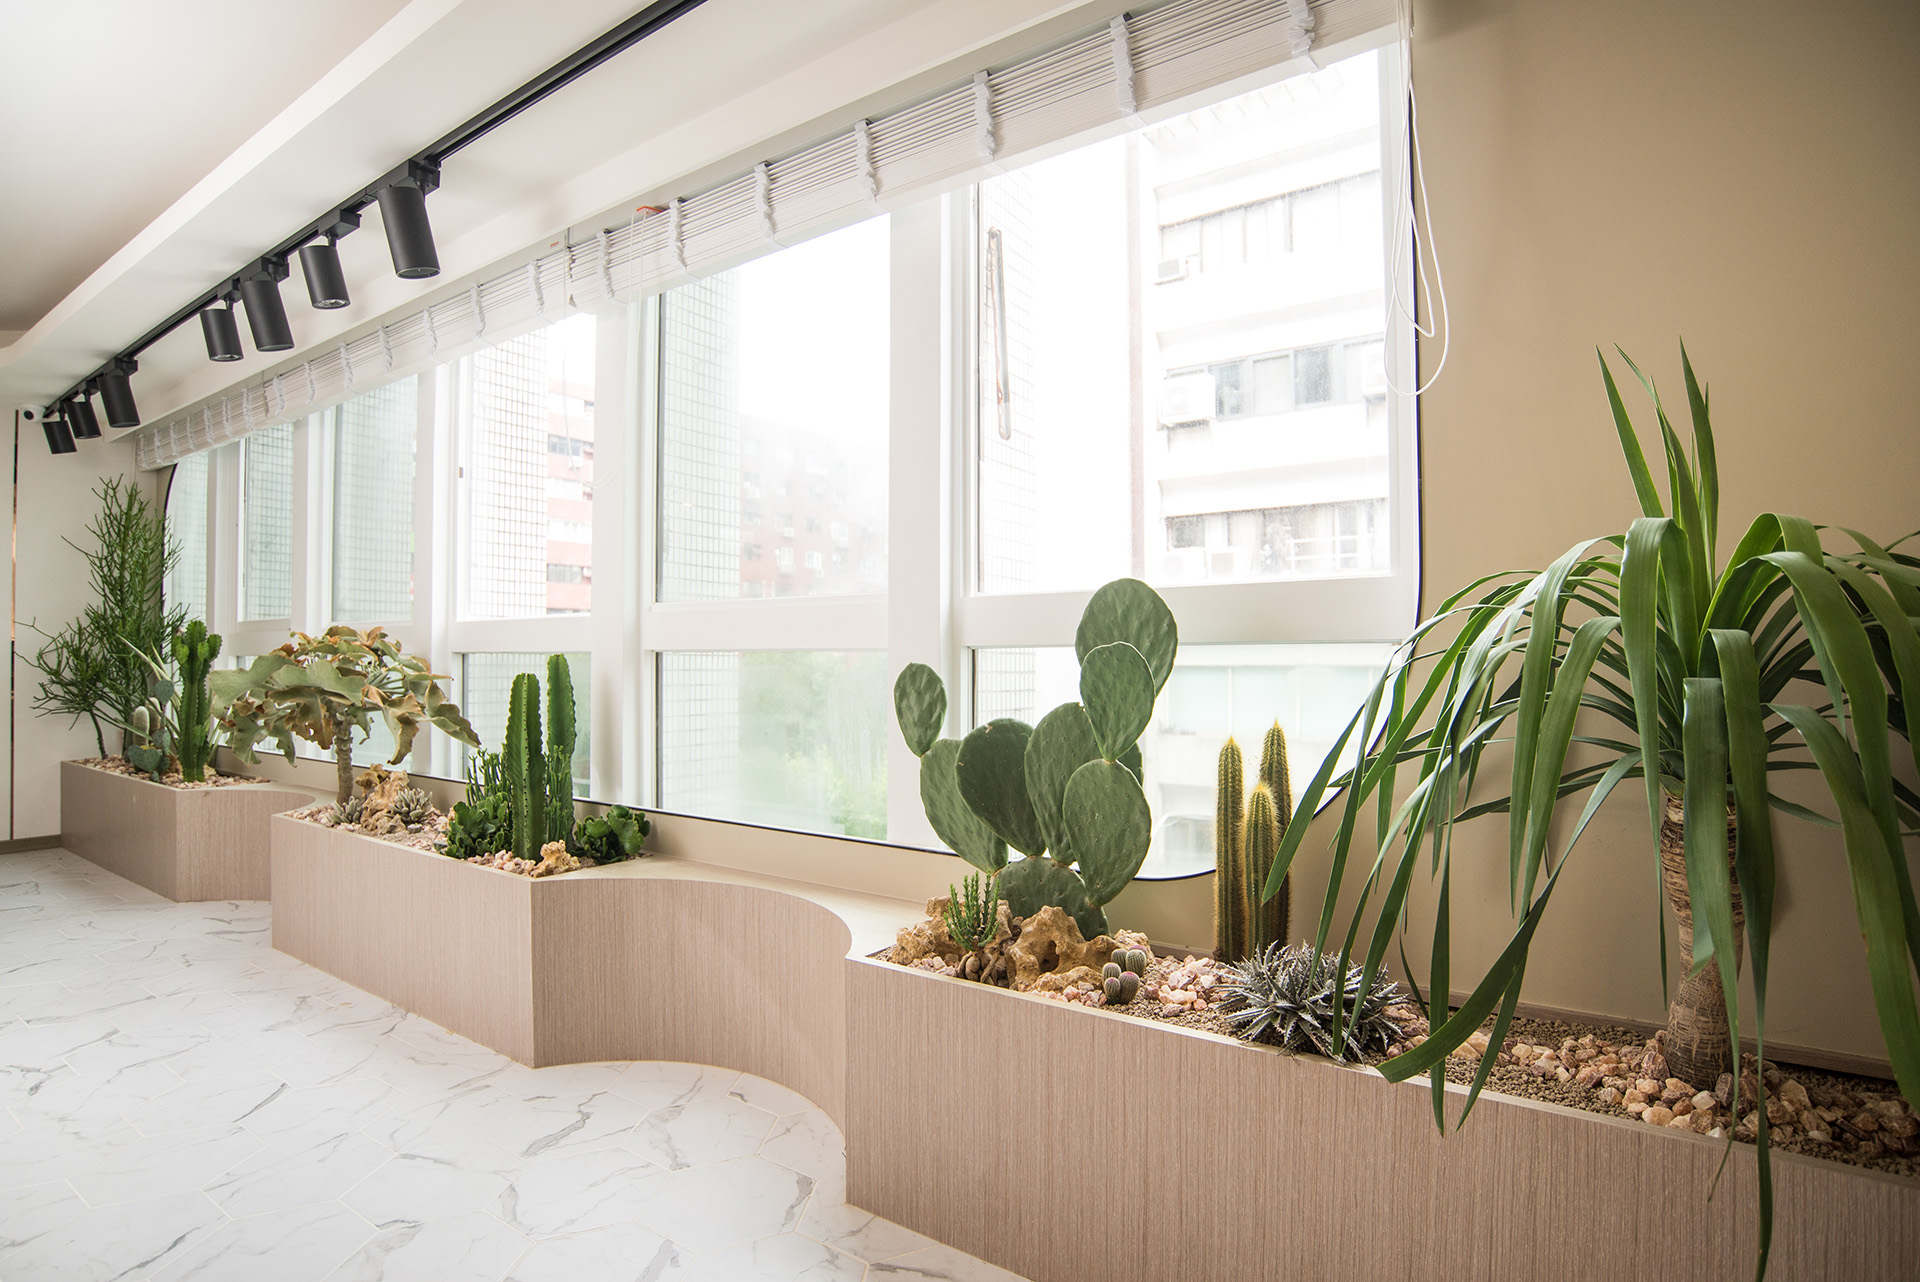 22 種小陽台適合的佈置植物推薦 0907 台北東區室內植物造景 48